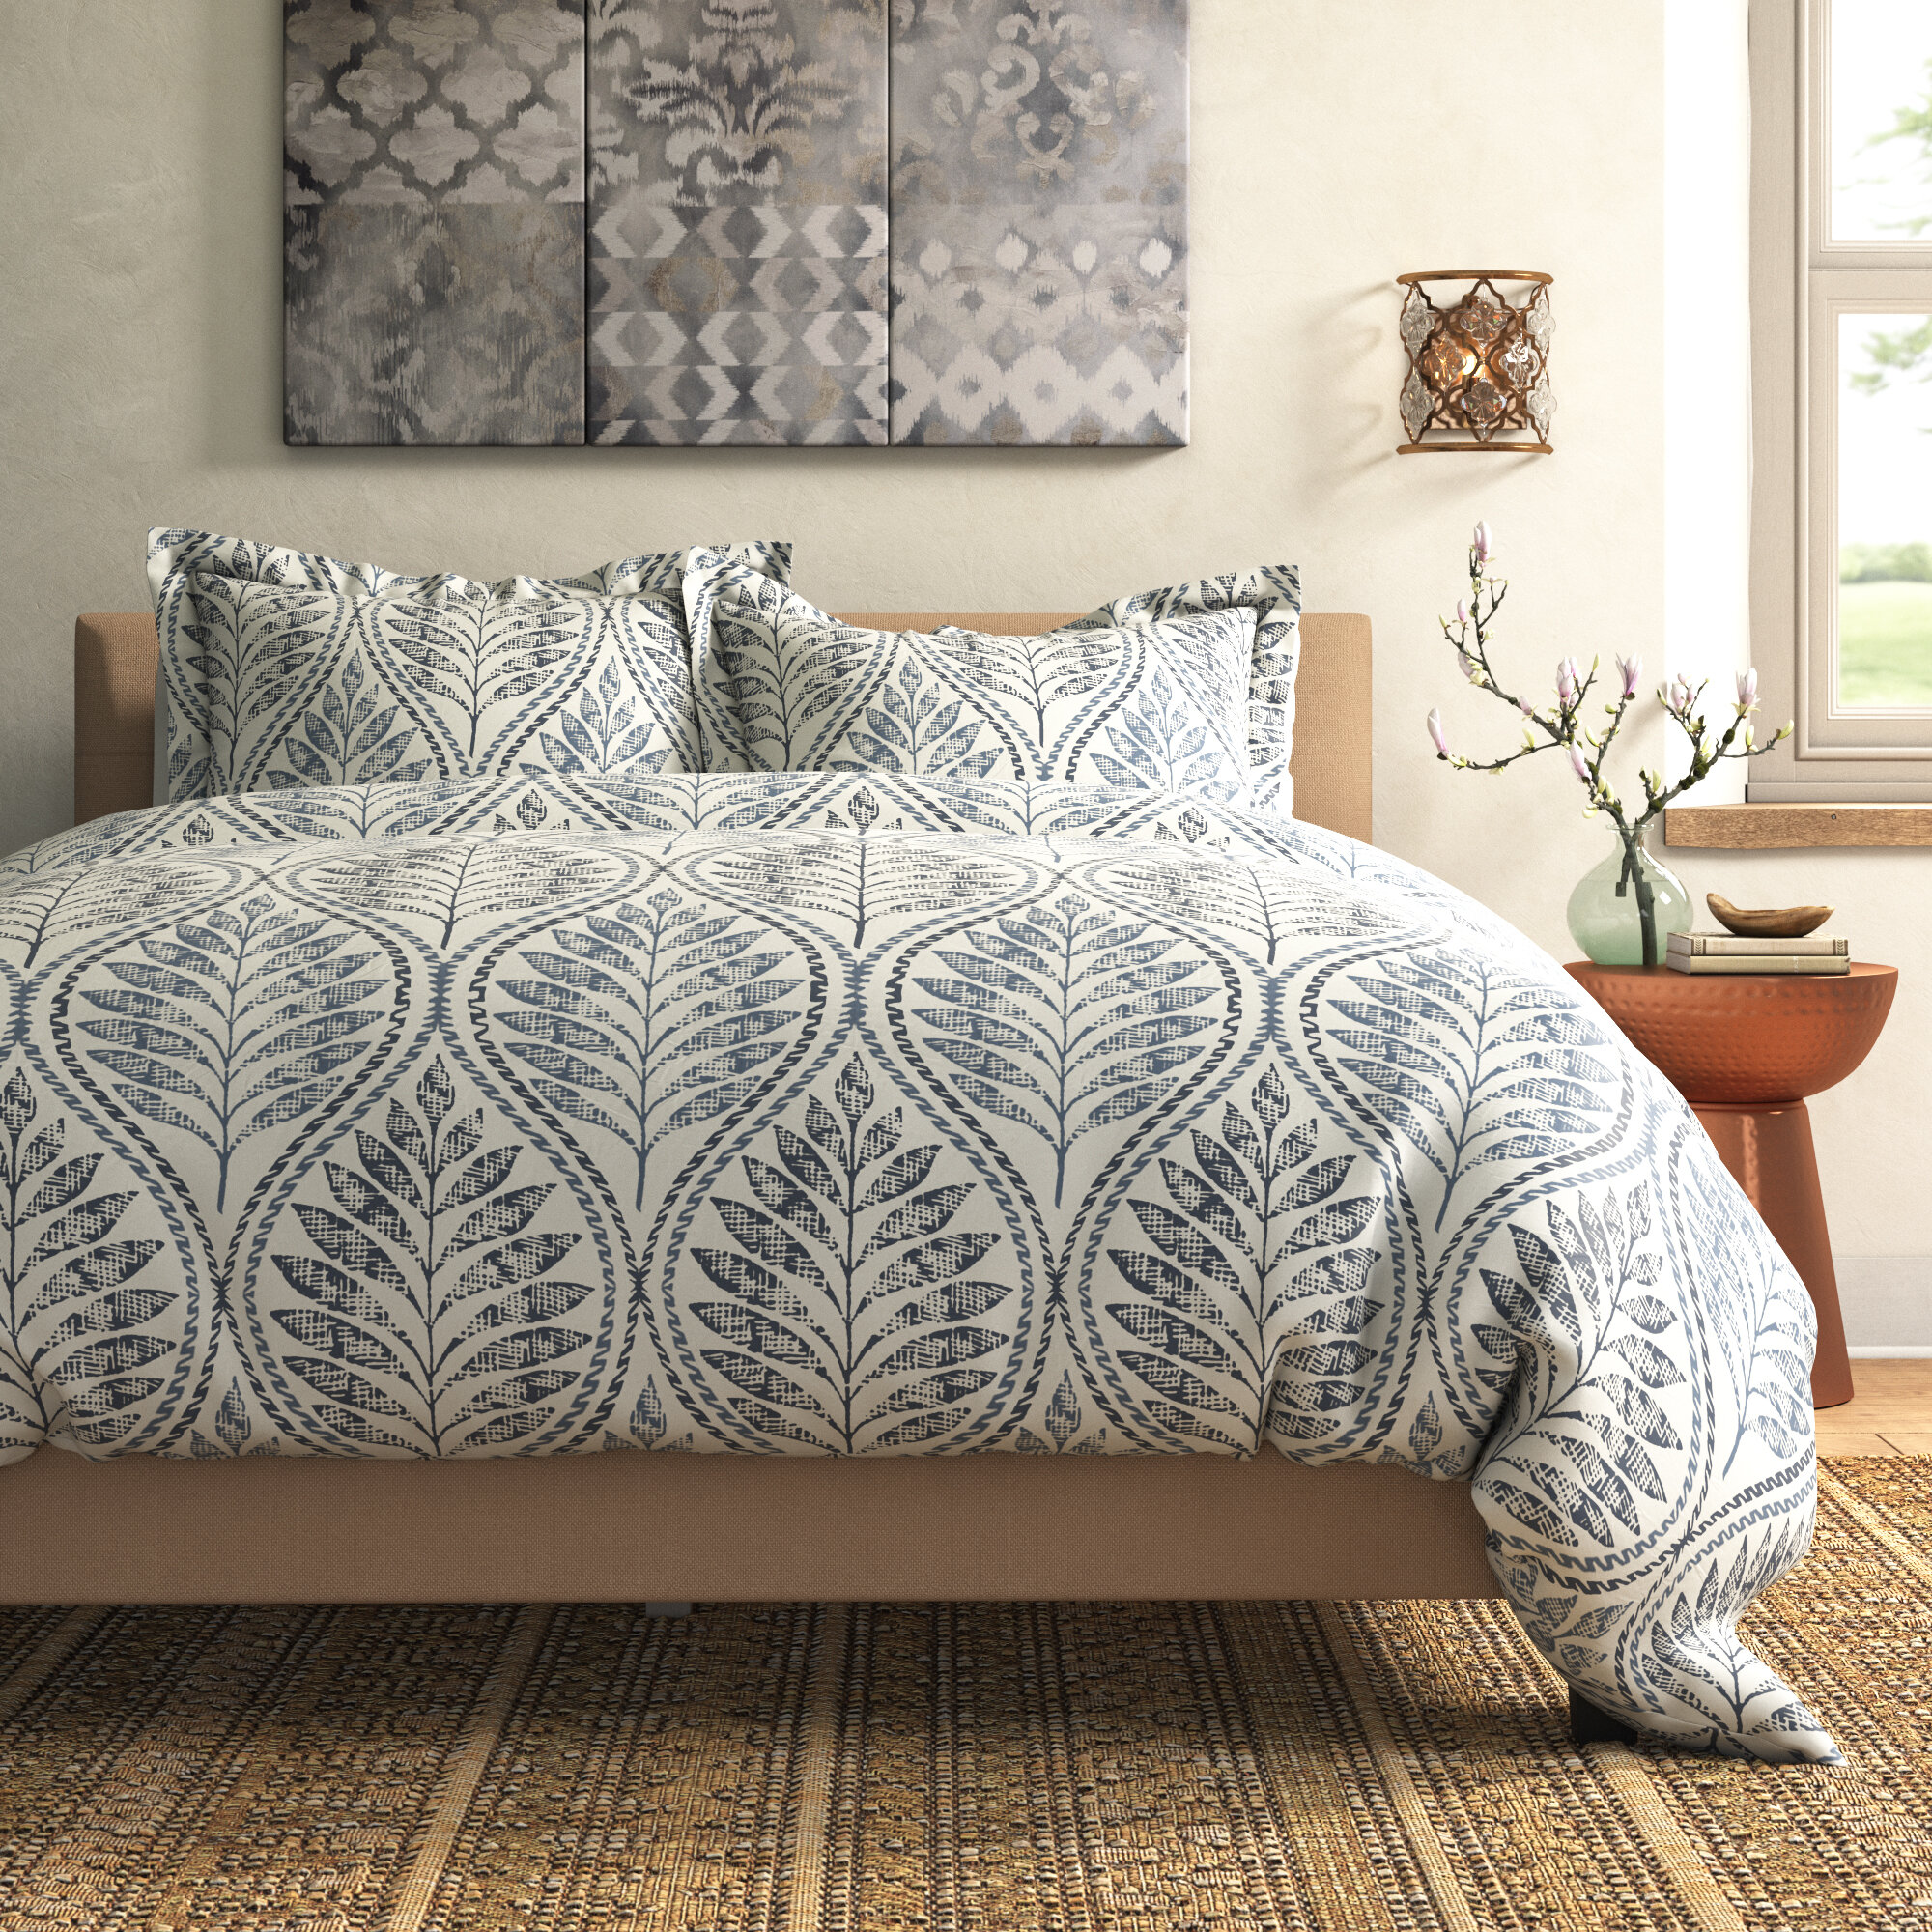 Bedding Maria Floral Pattern Luxurious Modern Duvet Cover Sets Reversible Bedding Sets Home Furniture Diy Mhg Co Ke